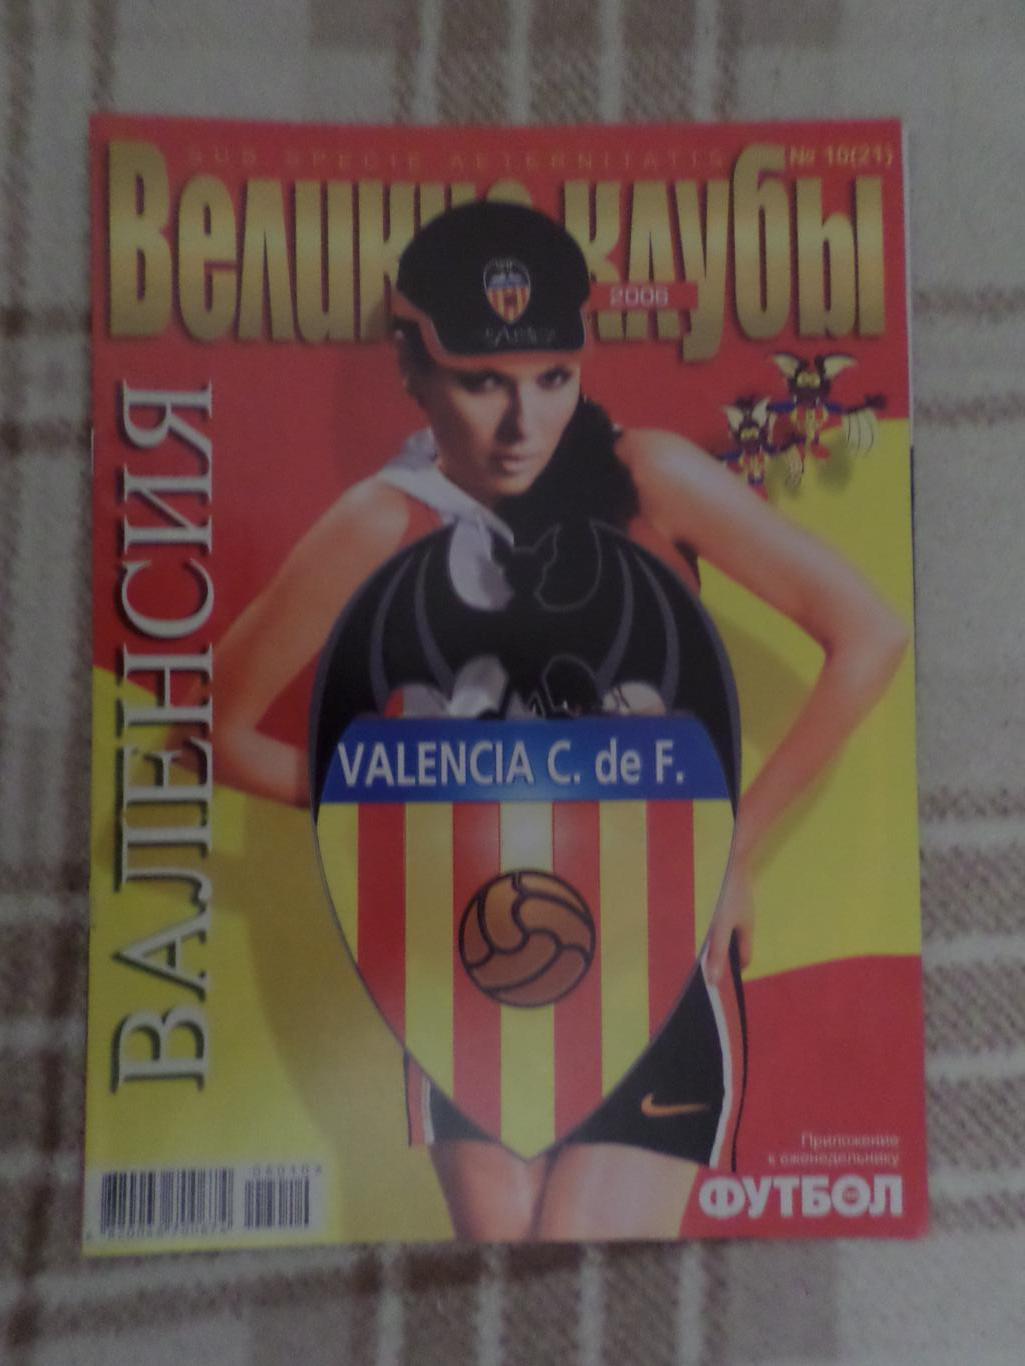 Еженедельник Футбол (Киев) Великие клубы спецвыпуск 1 2006 Валенсия Испания